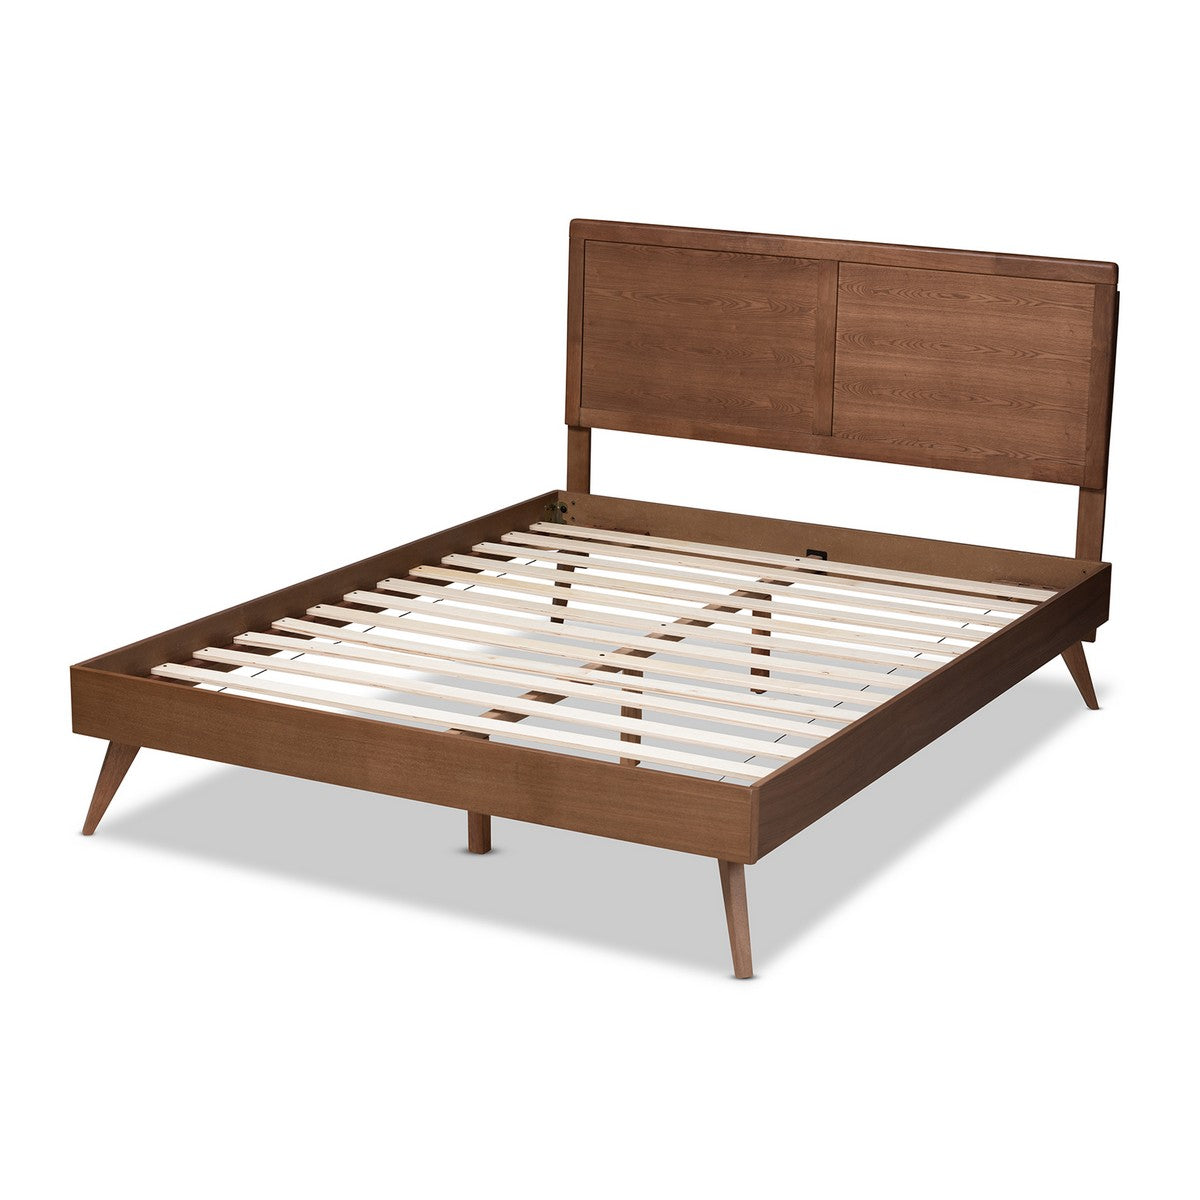 Baxton Studio Zenon Mid-Century Modern Walnut Brown Finished Wood Queen Size Platform Bed